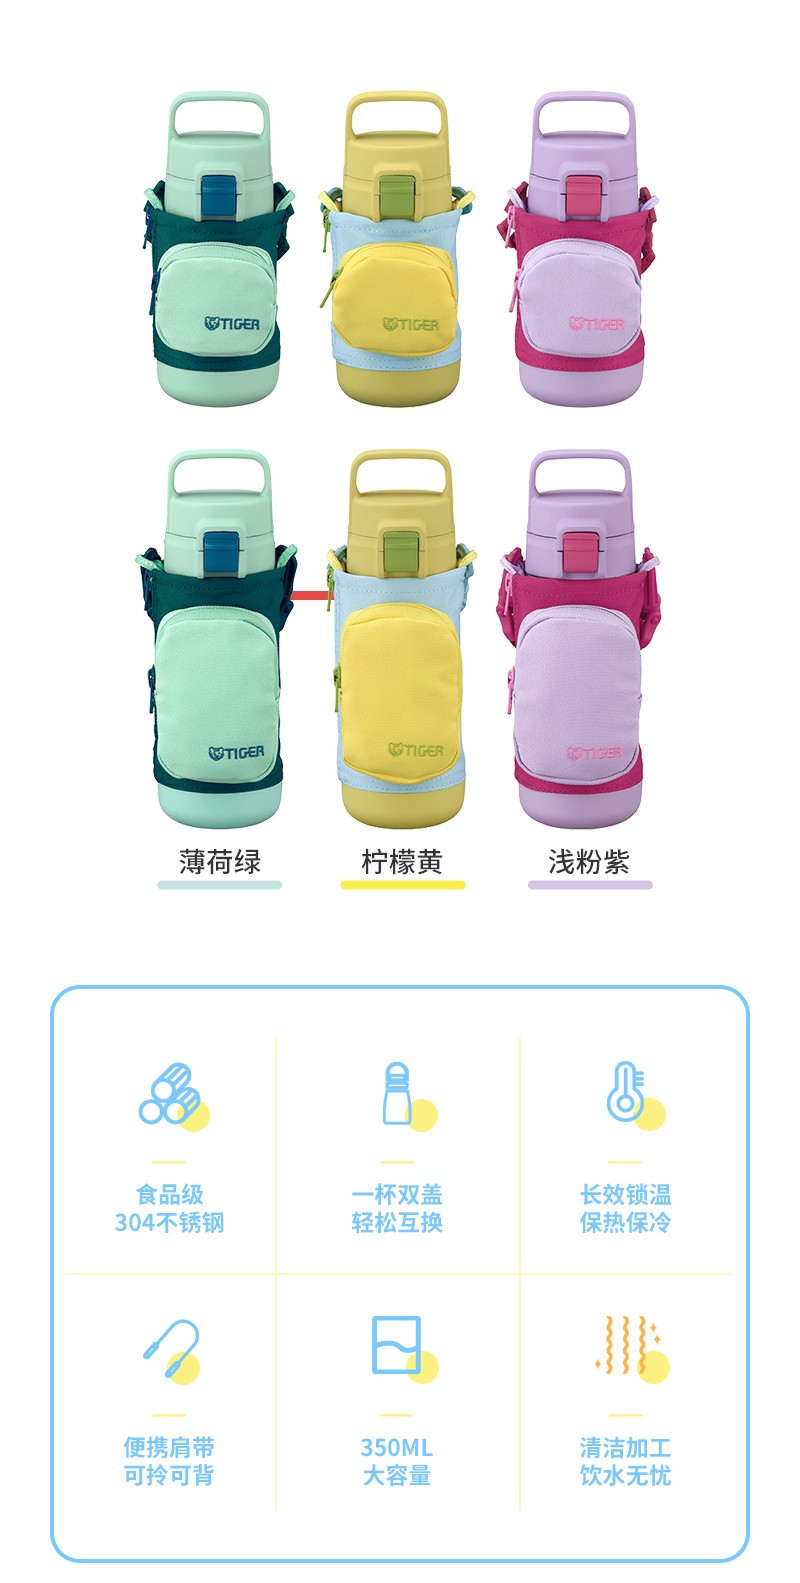 MTT-A系列兒童杯產品介紹_02